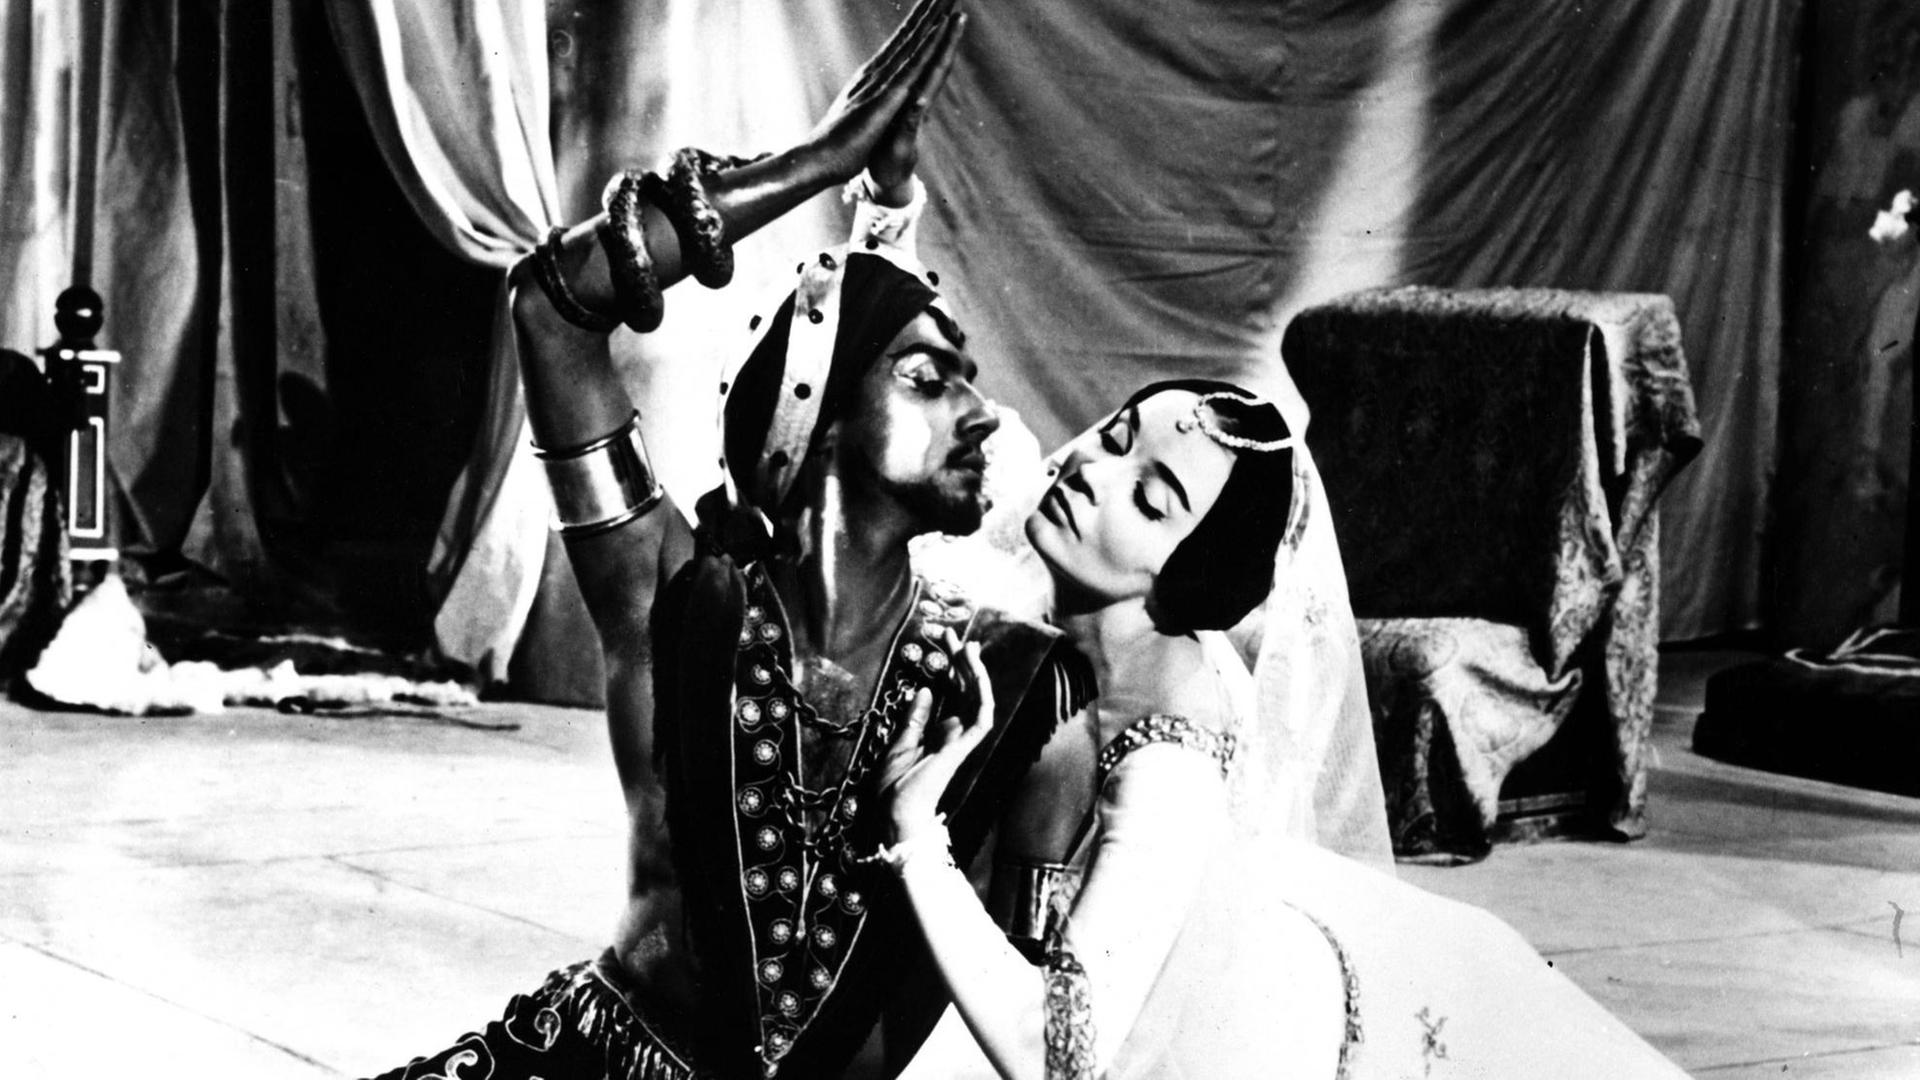 Antonio Ruiz Soler und Ludmilla Tcherina in einer Tanz-Szene der Romanze "Honeymoon", der unter dem Titel "Strahlender Himmel - strahlendes Glück" 1959 in die deutschen Kinos kam